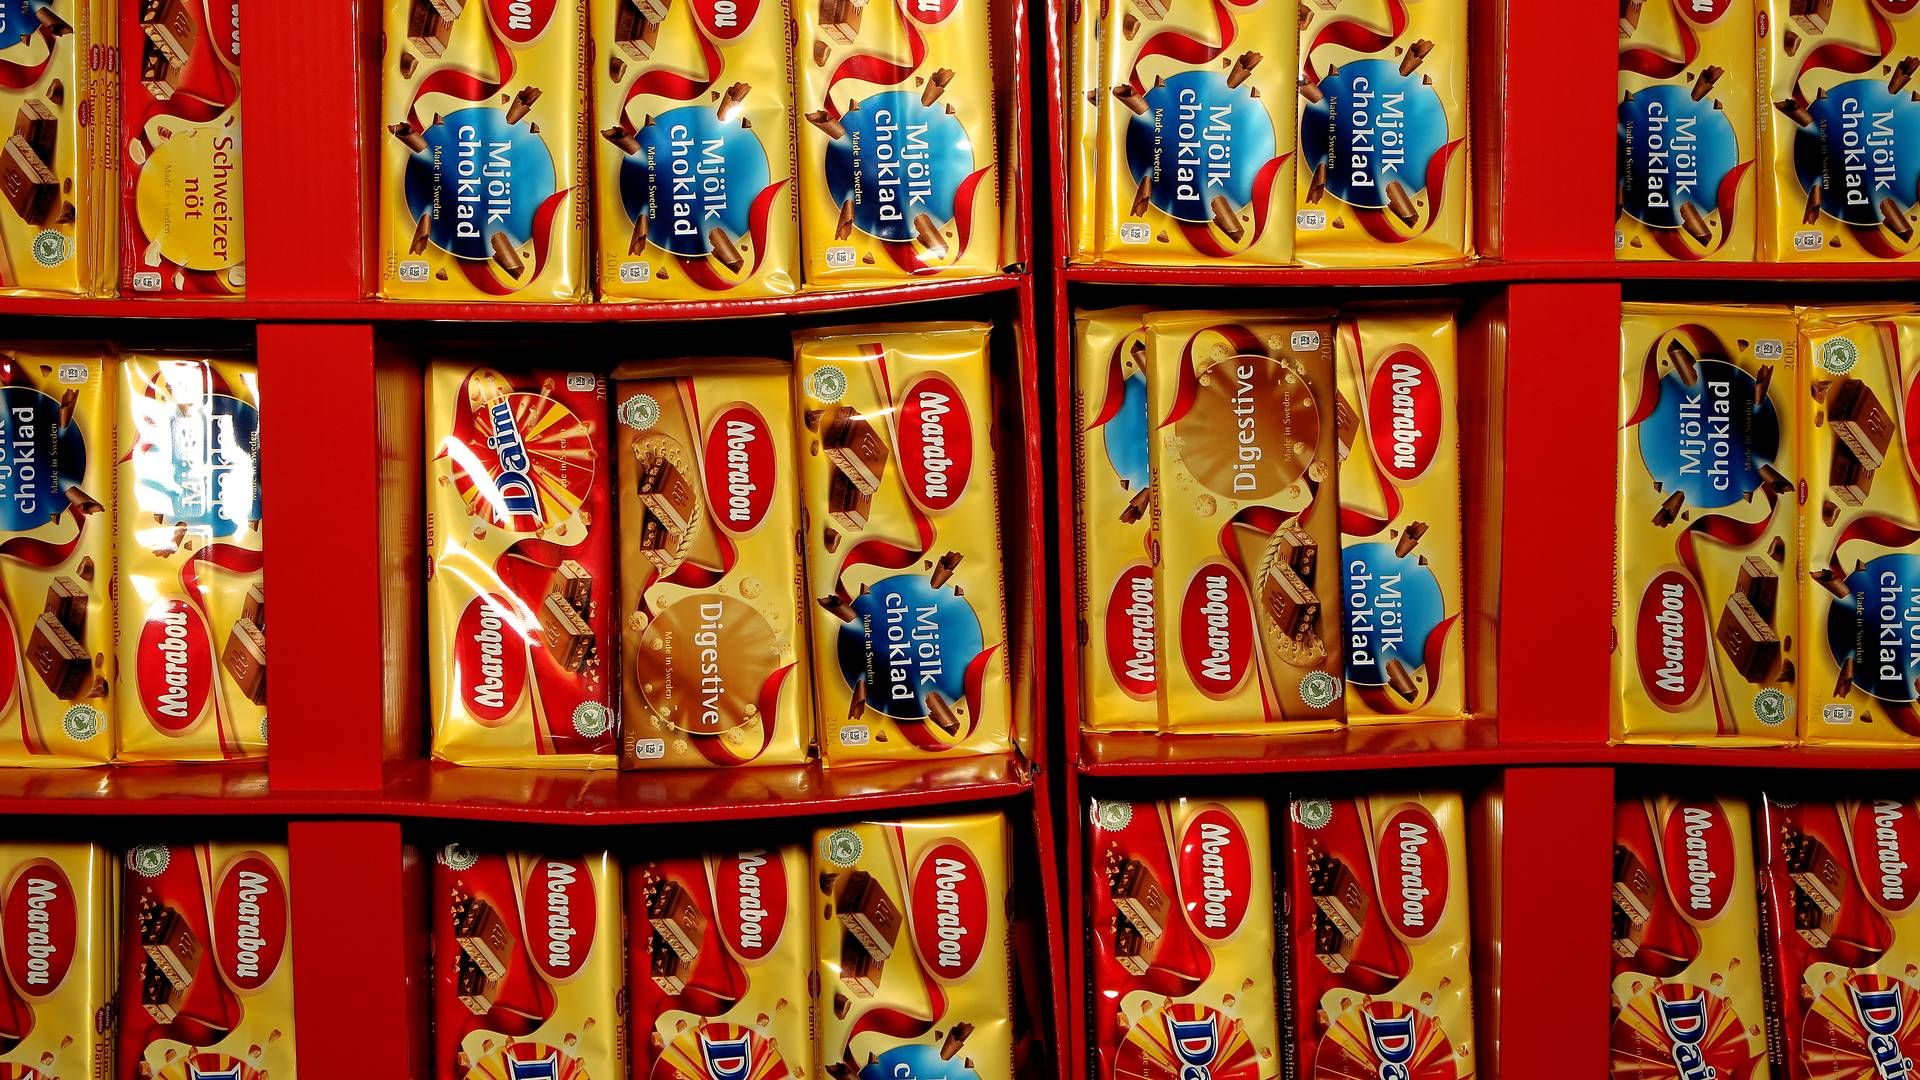 Det kendte chokolademærke Marabou havnede i søgelyset sidste år, da ejeren, fødevaregiganten Mondelez, havnede på Ukraines liste over selskaber, der har aktiviteter i Rusland og dermed er blevet sortlistet af ukrainske myndigheder. | Foto: Martin Lehmann